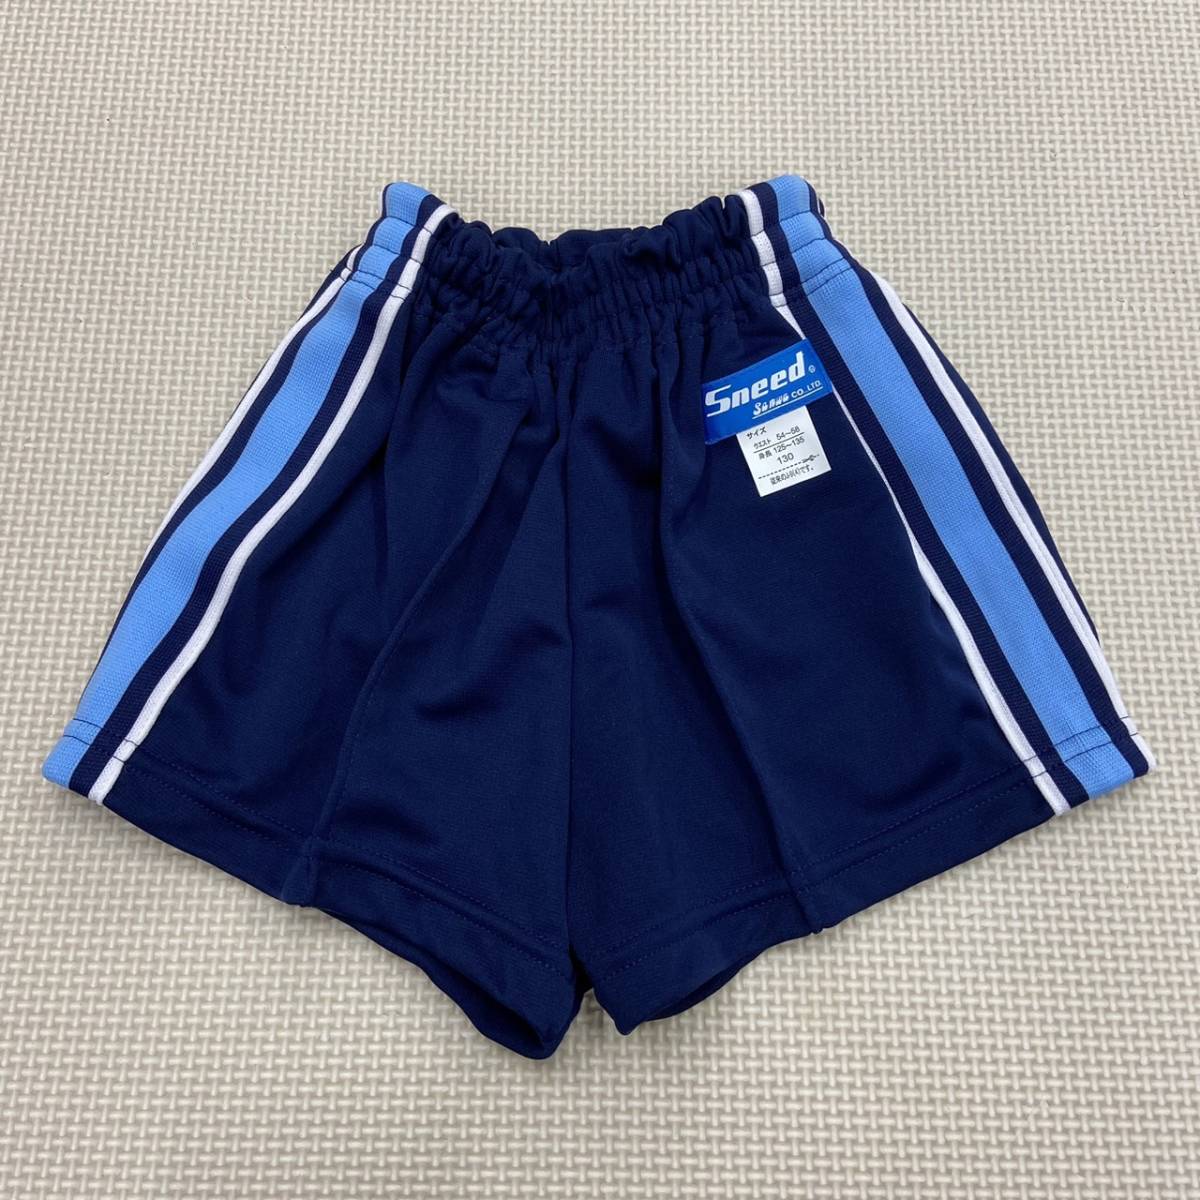 SS-NBSP1303 новый товар [Sneed Sanwa] спорт одежда шорты размер 130 3 листов / темно-синий x бледно-голубой // короткий хлеб / мягкая игрушка / дисплей / маленький размер 